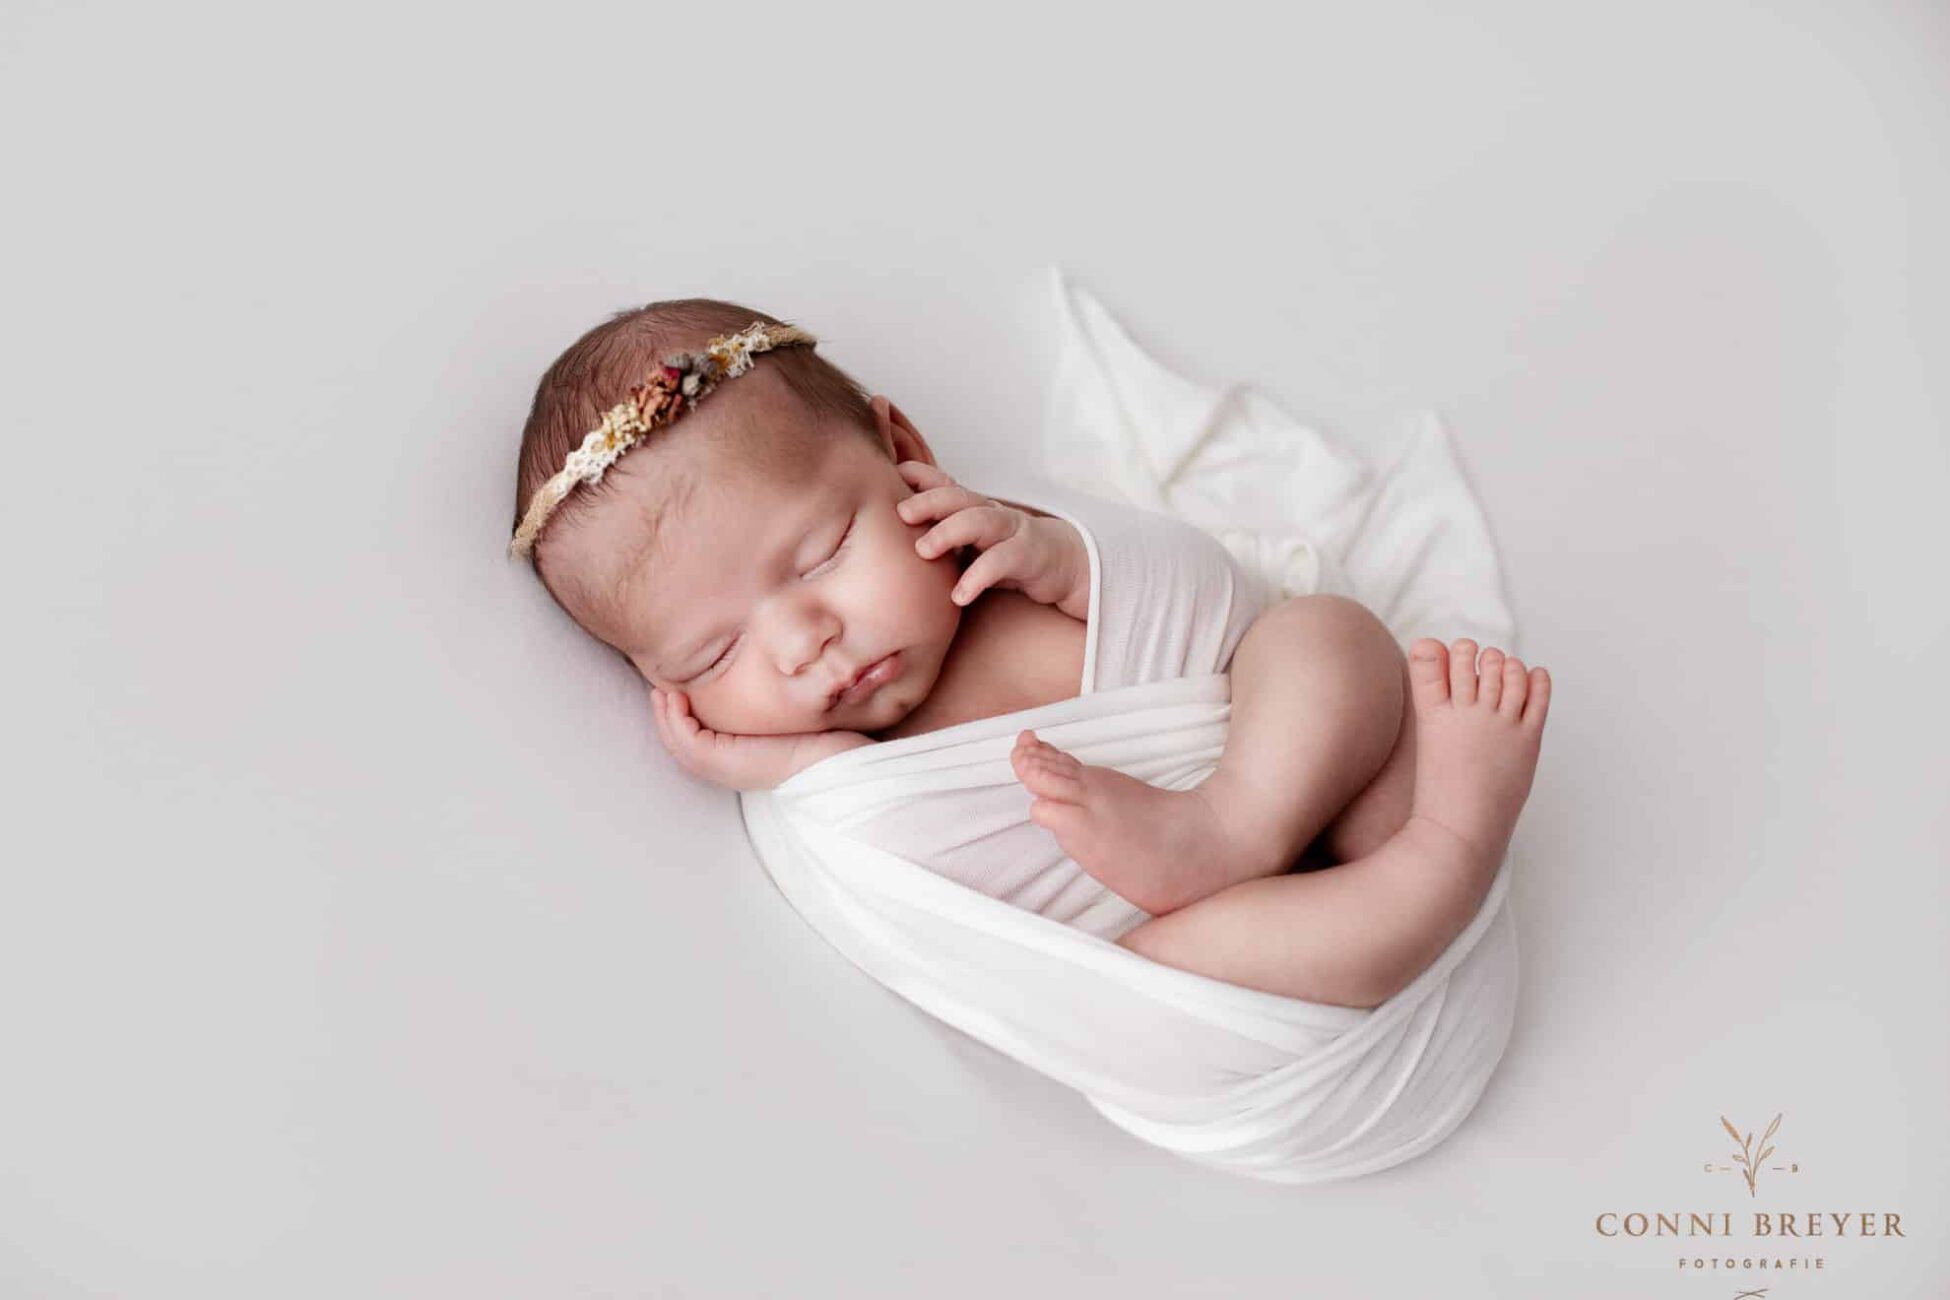 Babyshooting stilvoll in weiß mit süßem Stirnbändchen nähe Lindau am Bodensee - Conni Breyer Fotografie